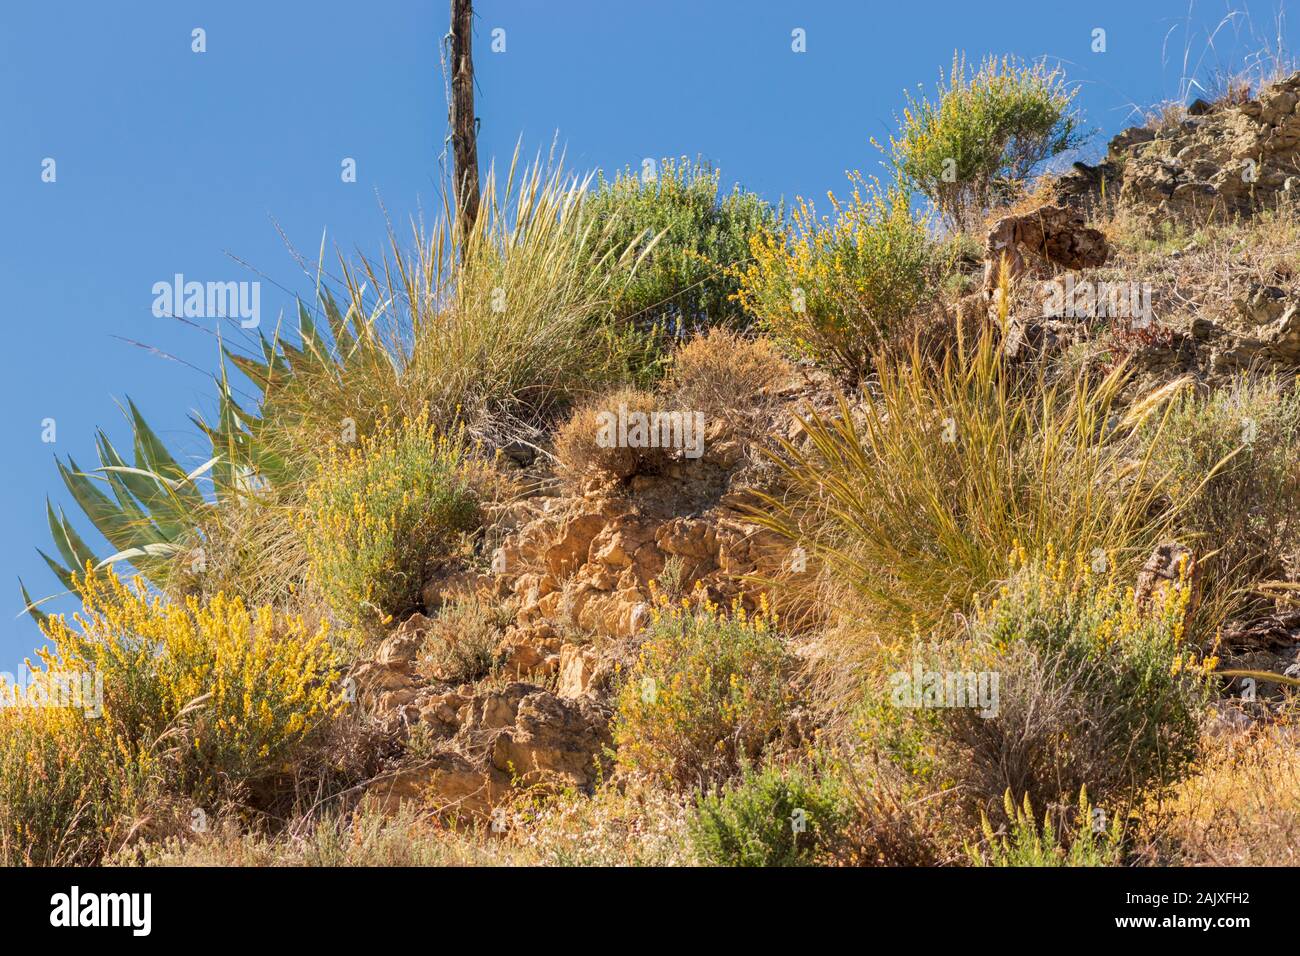 Genisteae,  Broom Plants of the Mediterranean Region Spain Stock Photo